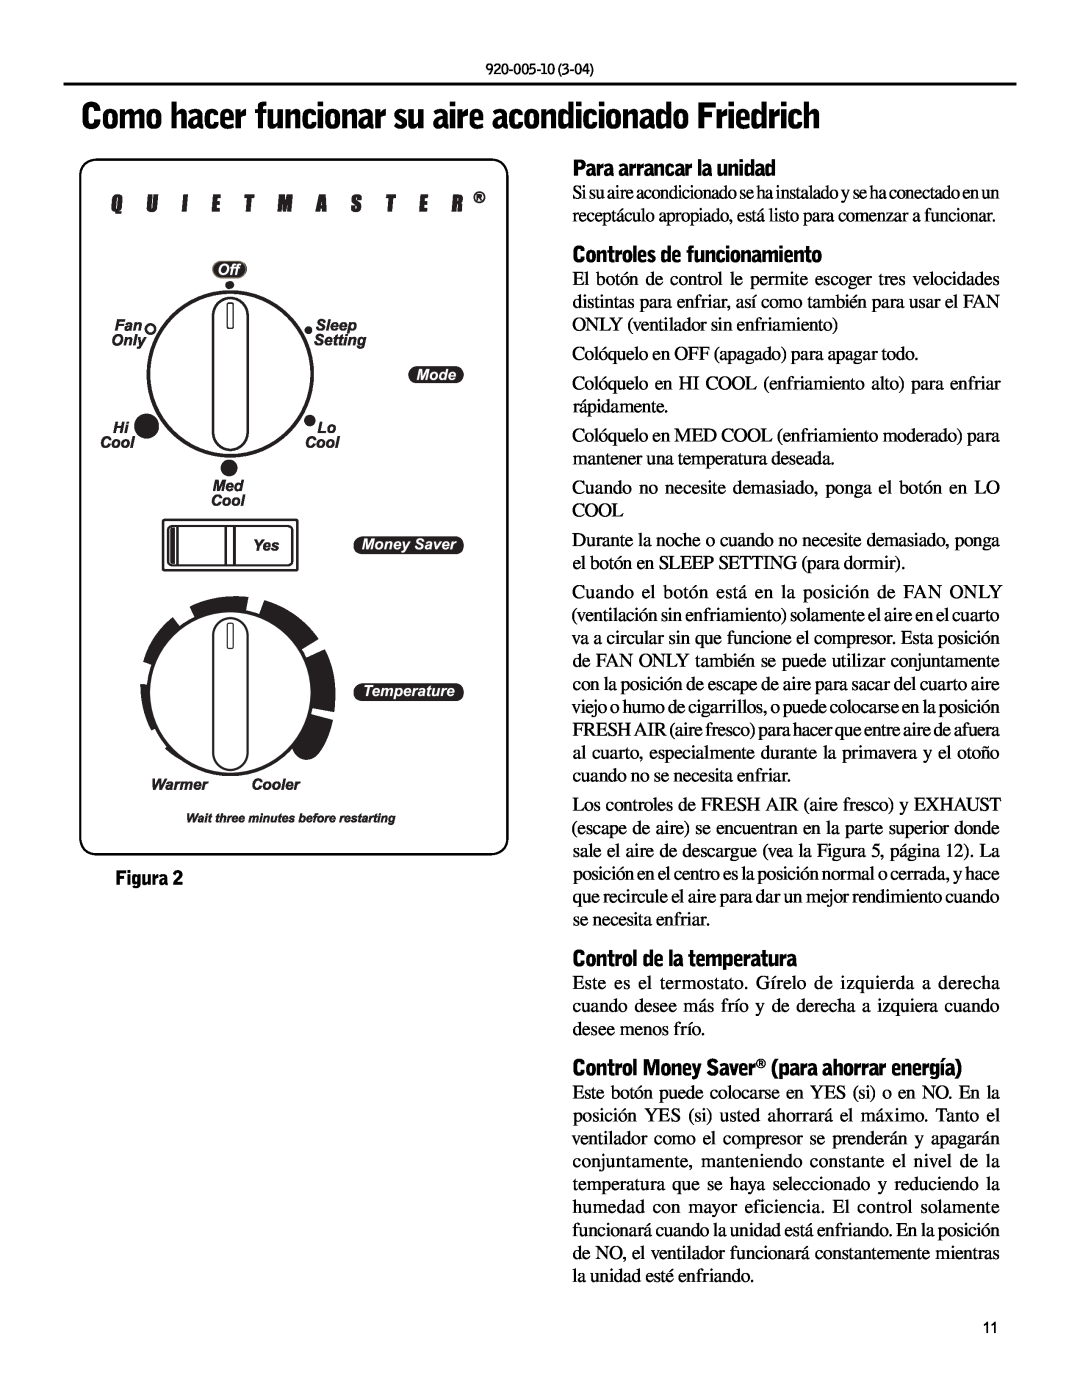 Friedrich KM20, KS10 manual Para arrancar la unidad, Controles de funcionamiento, Control de la temperatura, Figura 